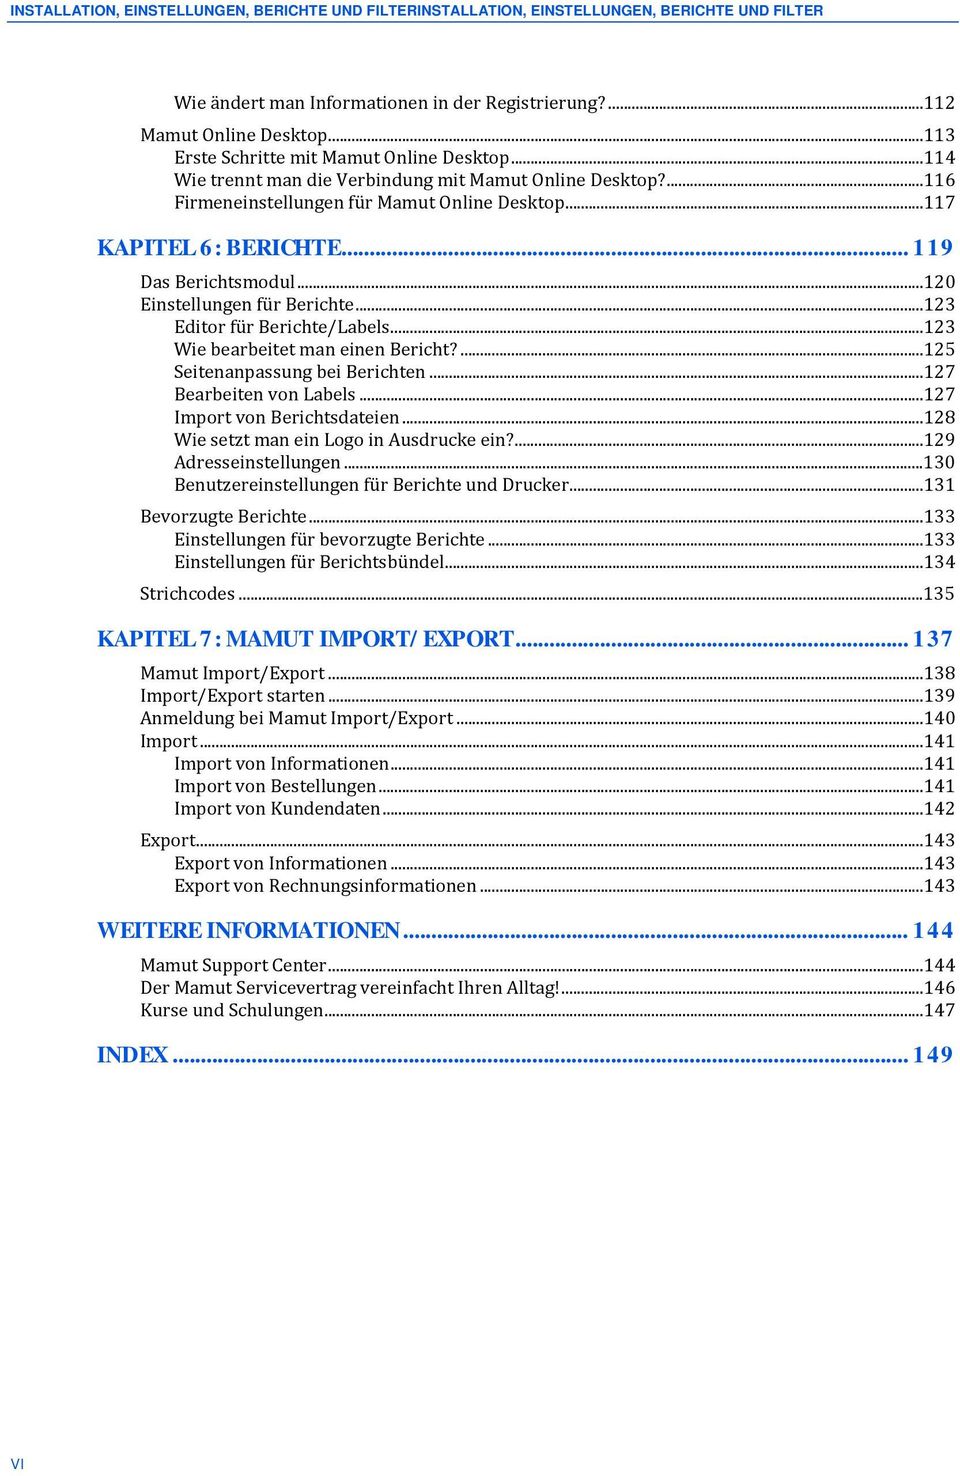 .. 119 Das Berichtsmodul...120 Einstellungen für Berichte...123 Editor für Berichte/Labels...123 Wie bearbeitet man einen Bericht?...125 Seitenanpassung bei Berichten...127 Bearbeiten von Labels.